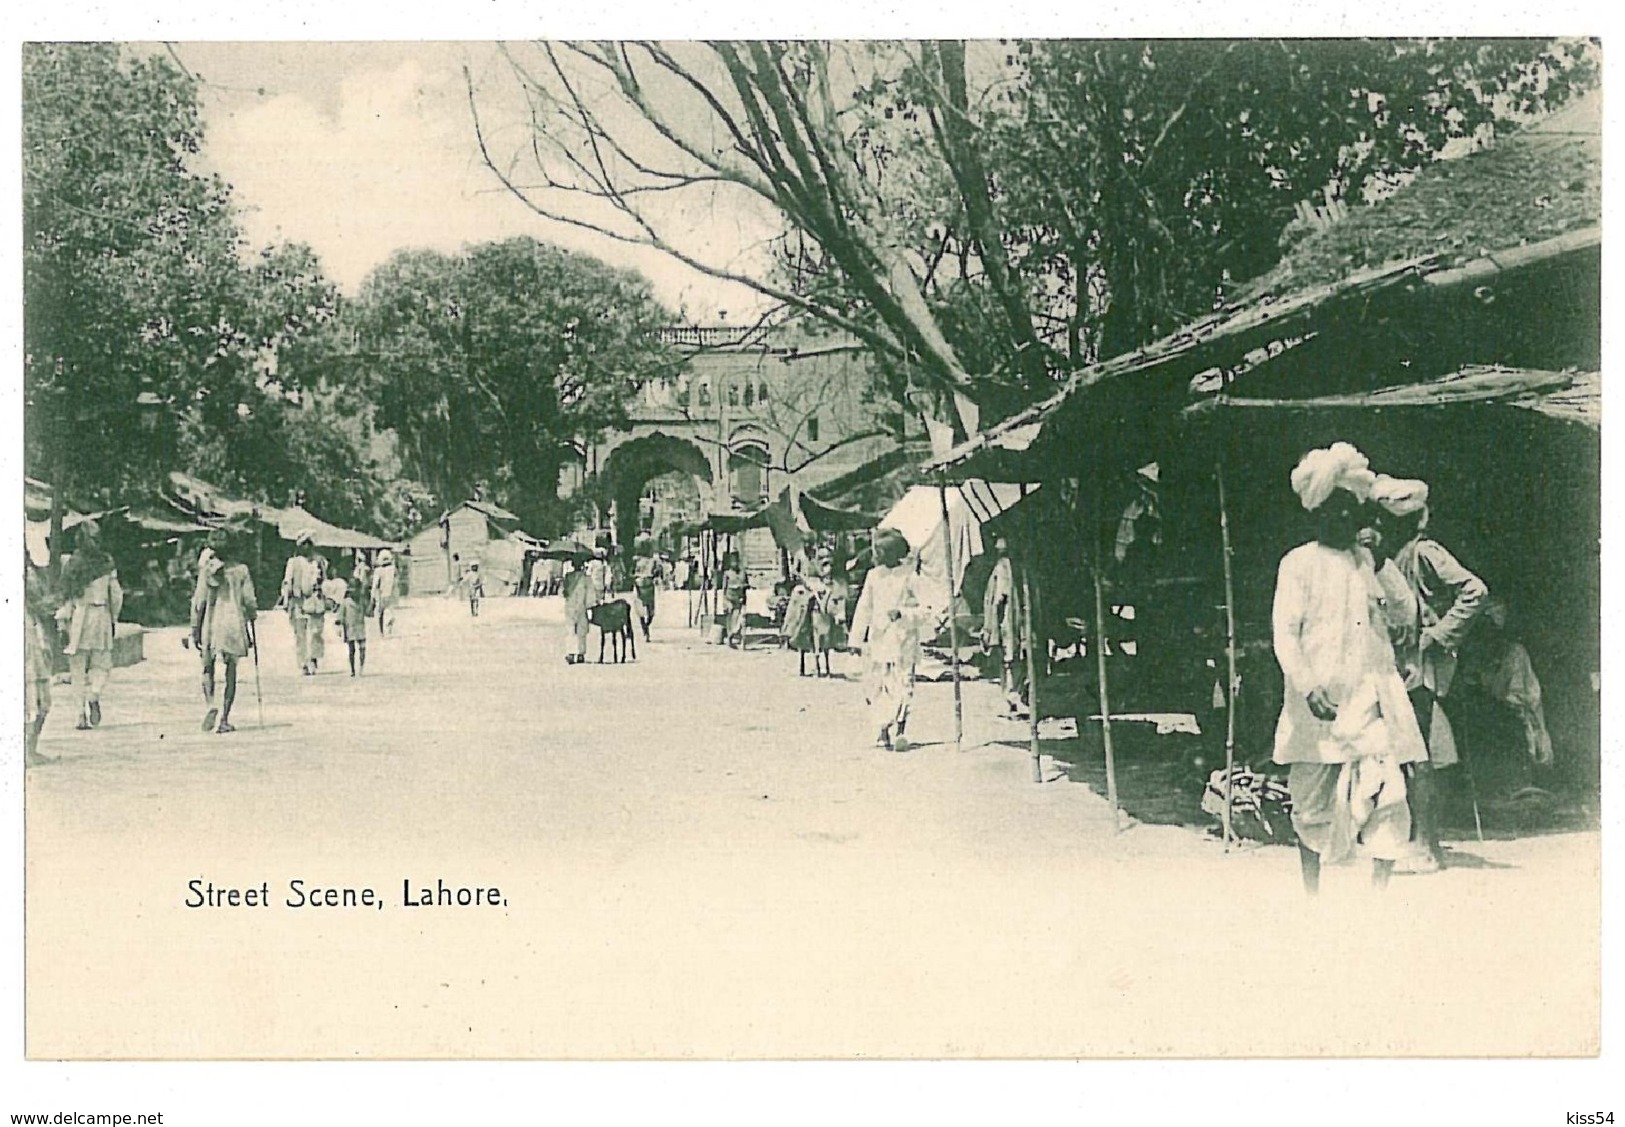 PAK 2 - 9314 LAHORE, Pakistan, Street Scene - Old Postcard - Unused - Pakistan